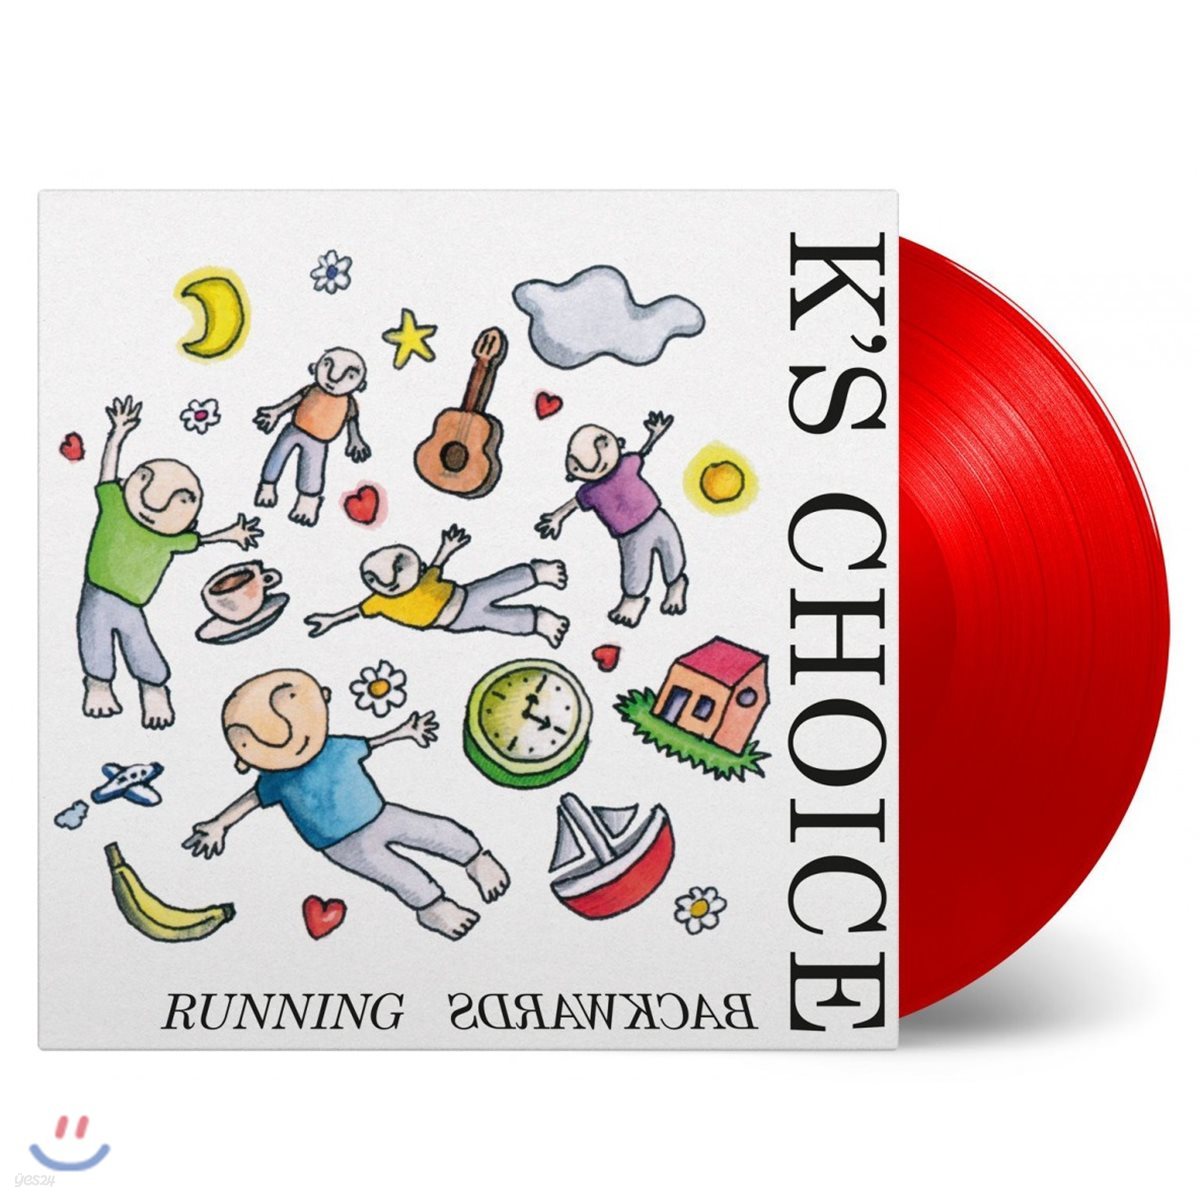 K&#39;s Choice (케이스 초이스) - Running backwards [레드 컬러 LP] 